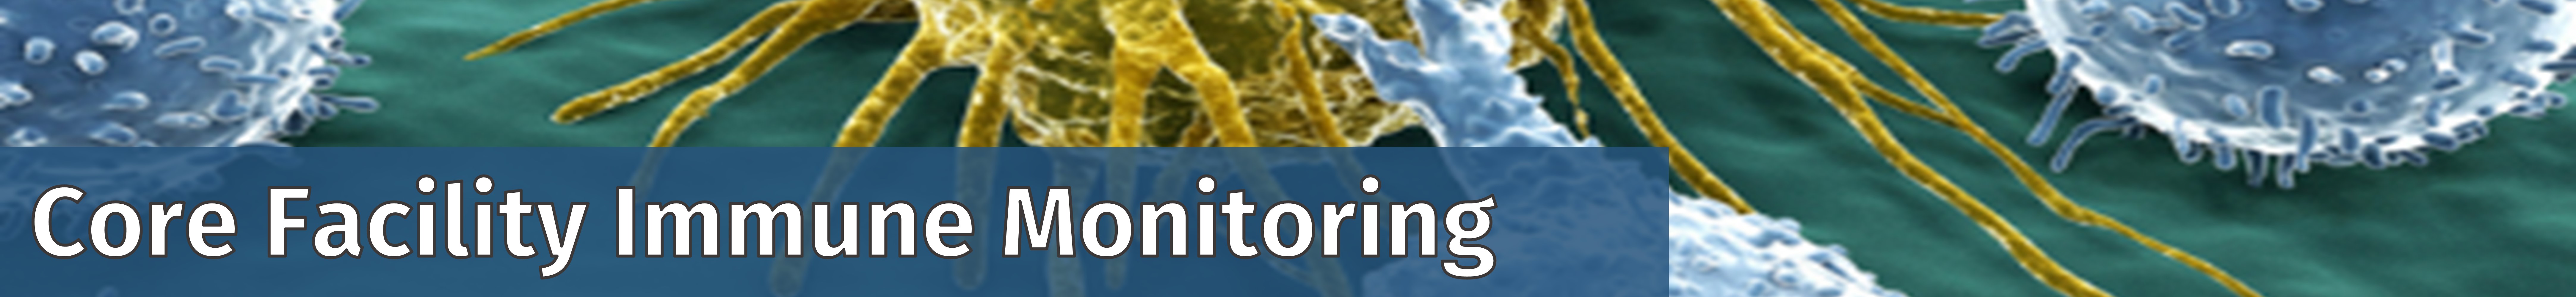 Bannertitel der CF Immune Monitoring